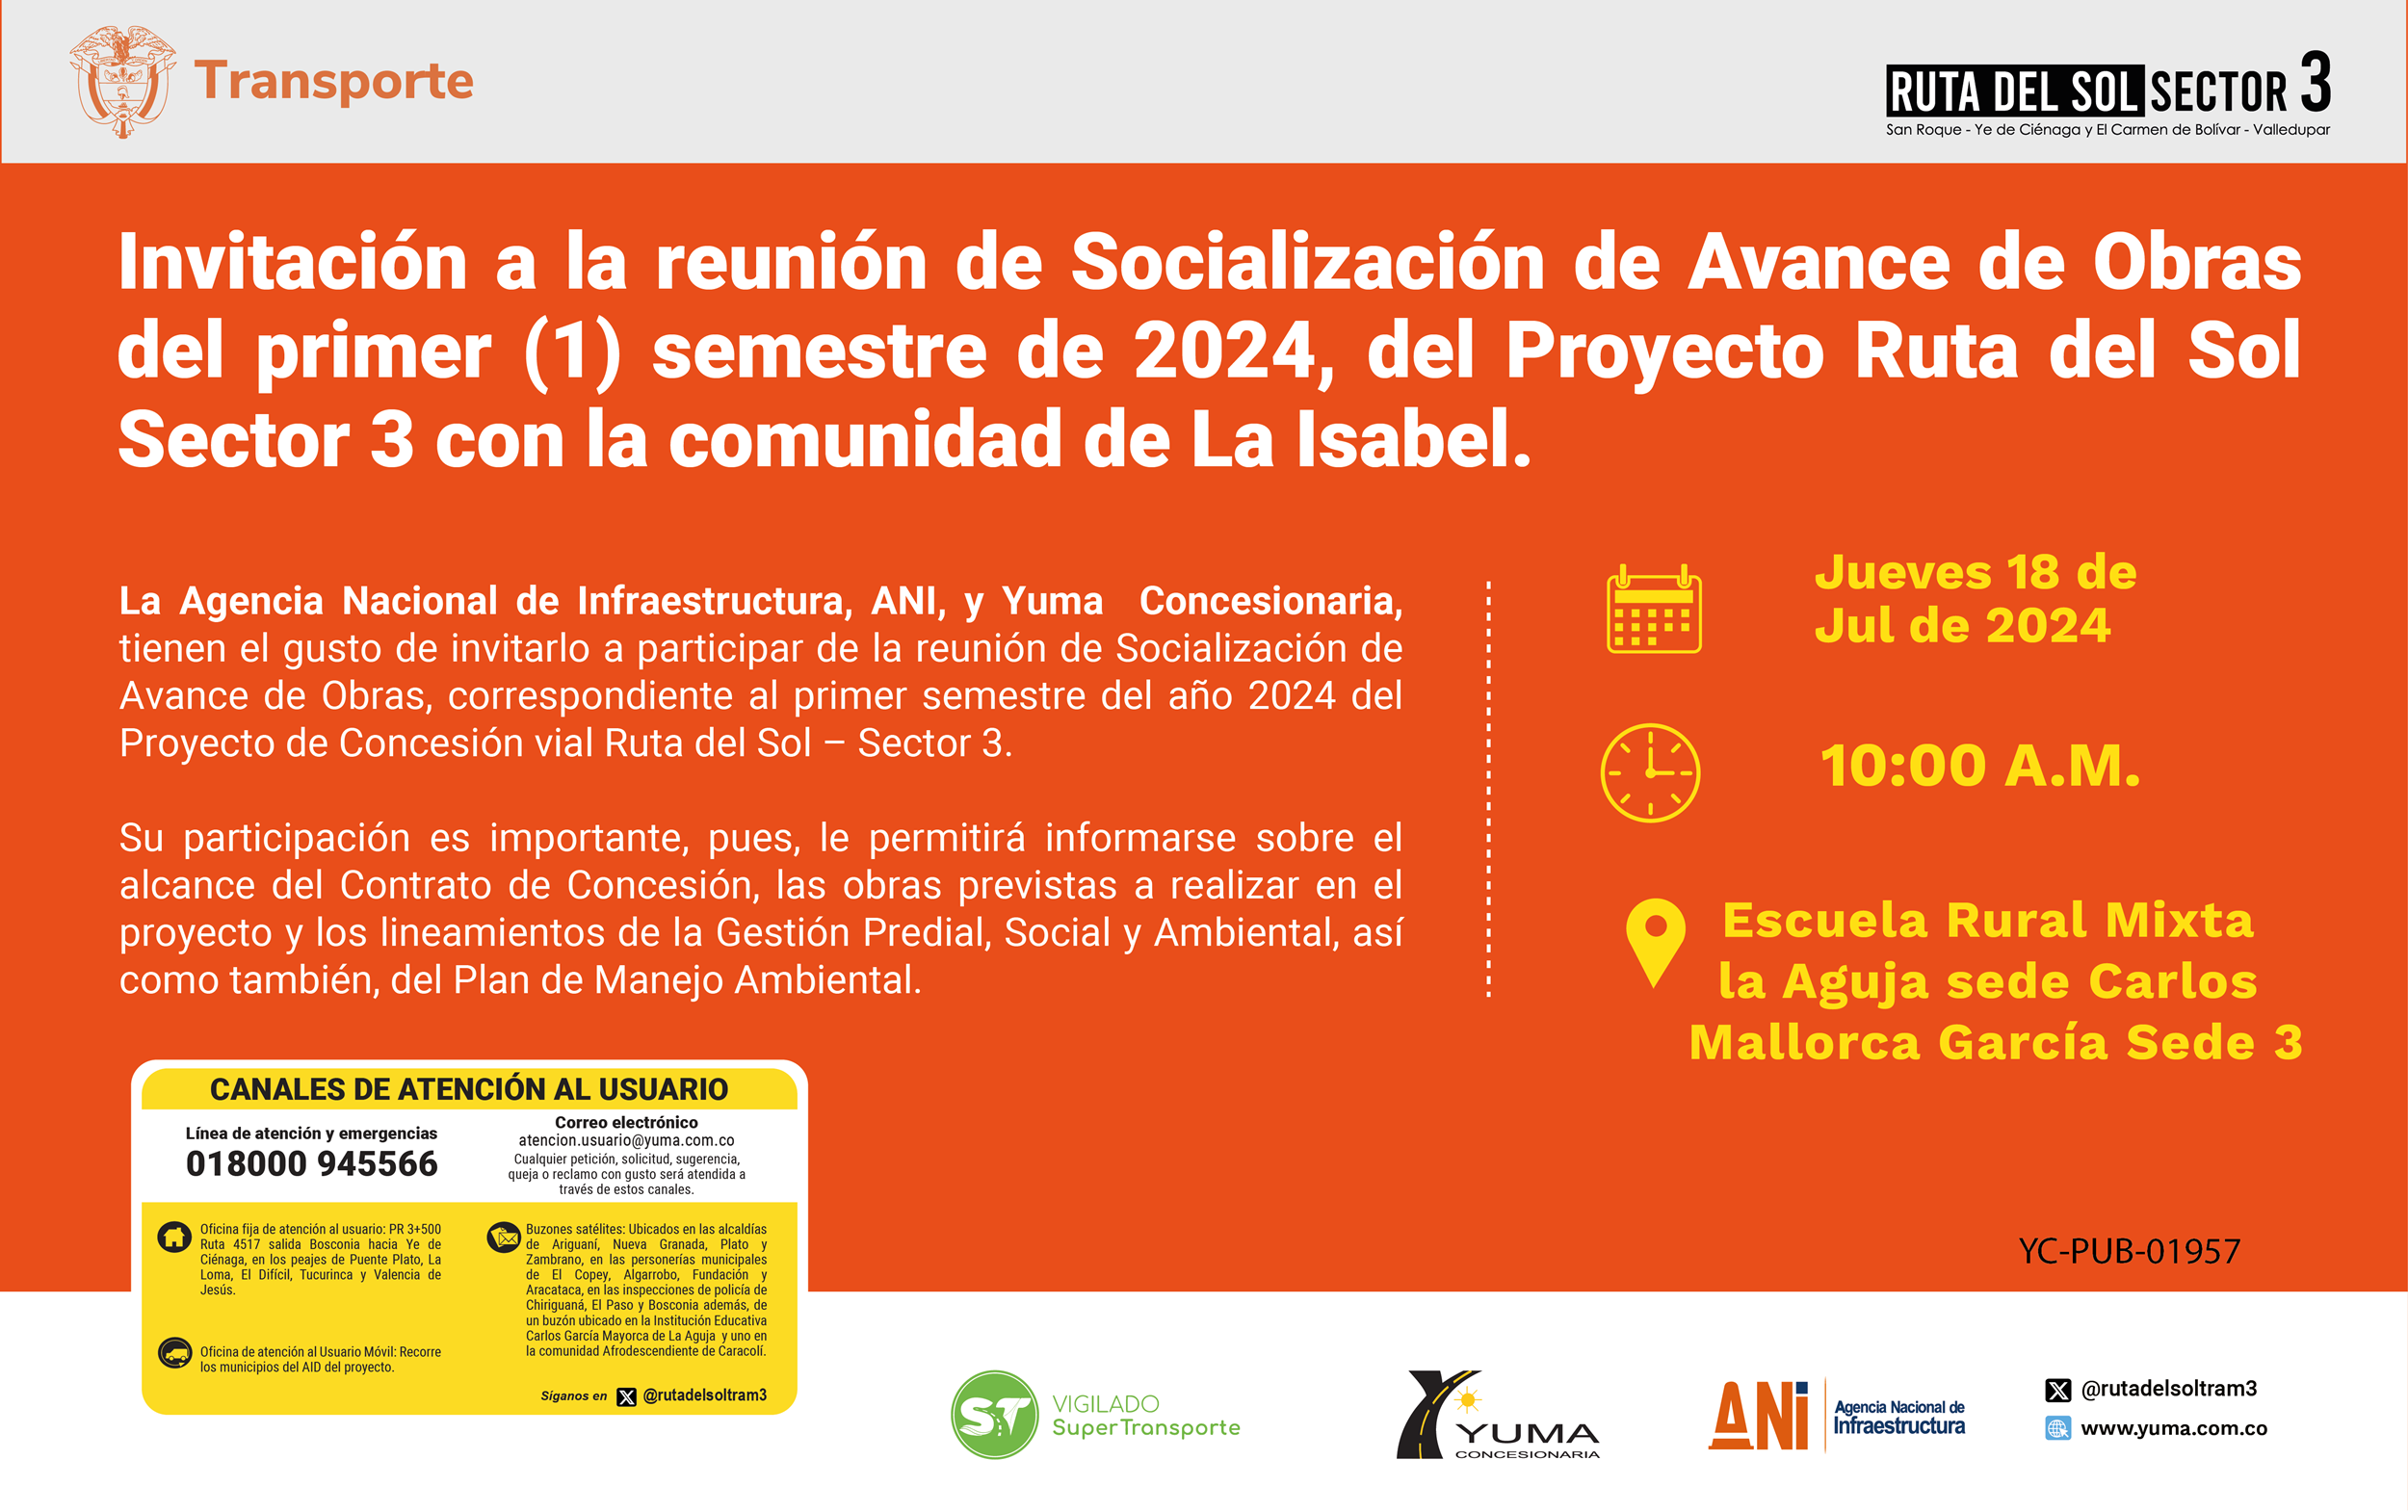 En este momento estás viendo Invitación a la reunión de Socialización de Avance de Obras del primer semestre de 2024 con la comunidad de La Isabel